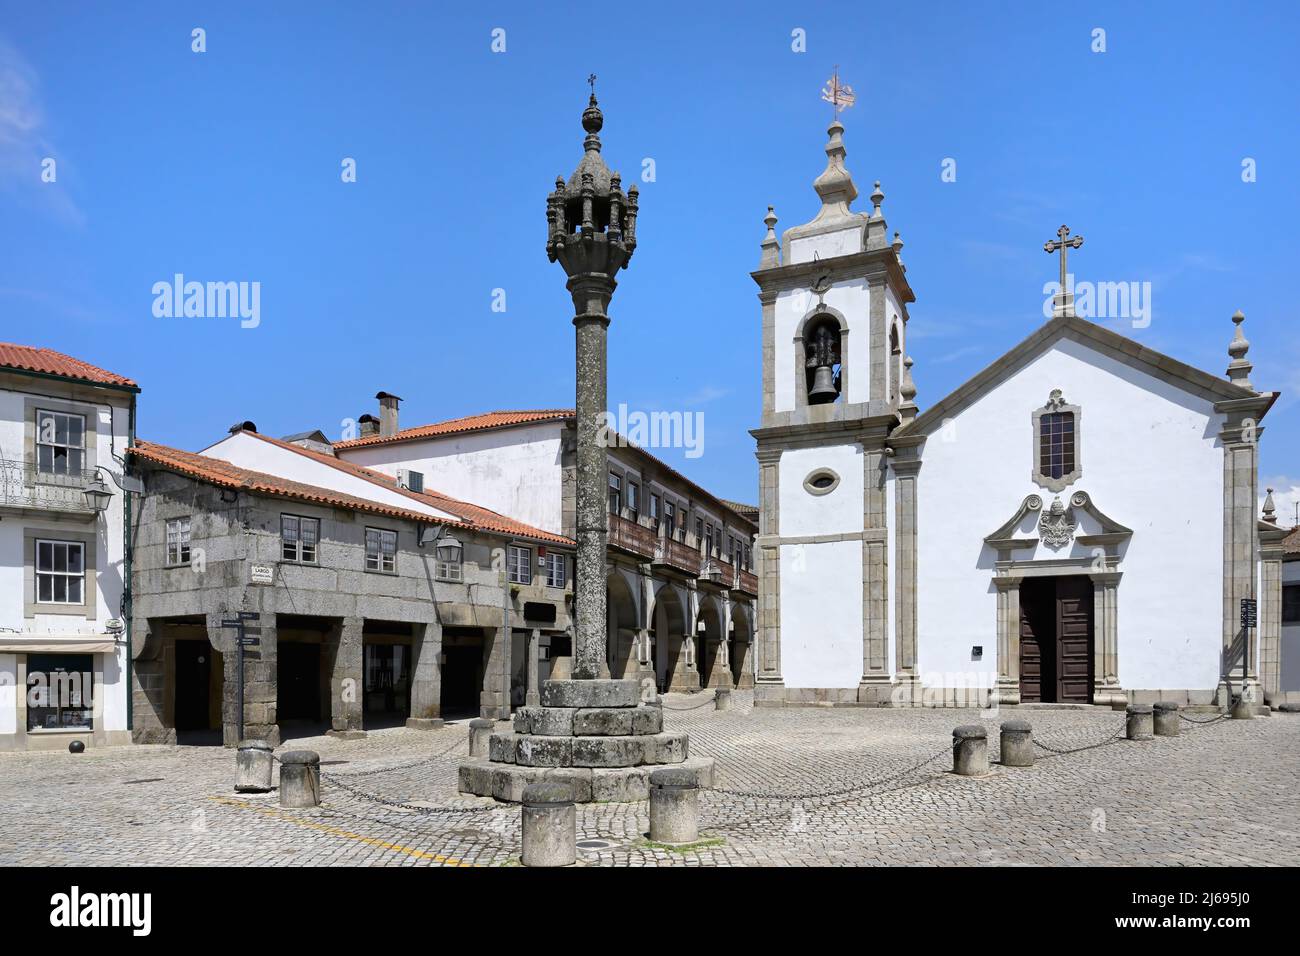 St. Peter's Church and Pillory, Trancoso, Serra da Estrela, Centro, Portugal Stock Photo